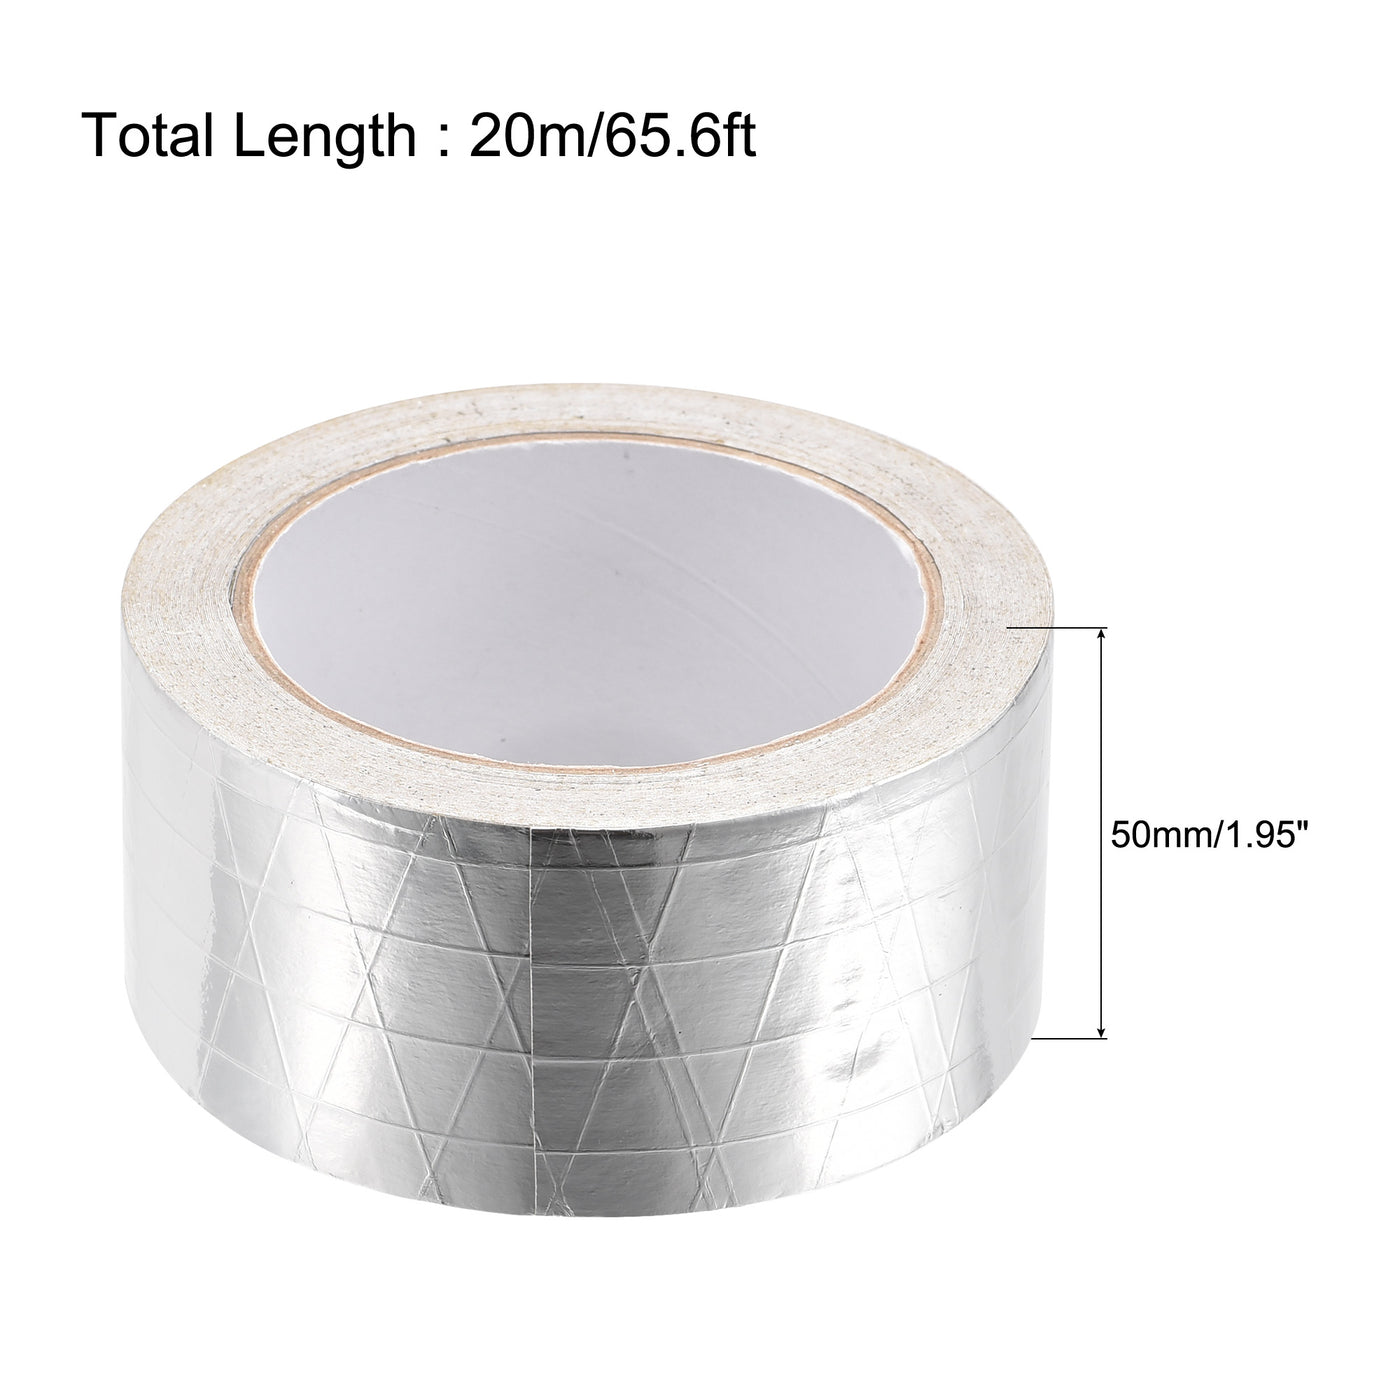 uxcell Uxcell Fiberglass Aluminum Foil Tape High Temperature Tape 50mmx20m/65ft